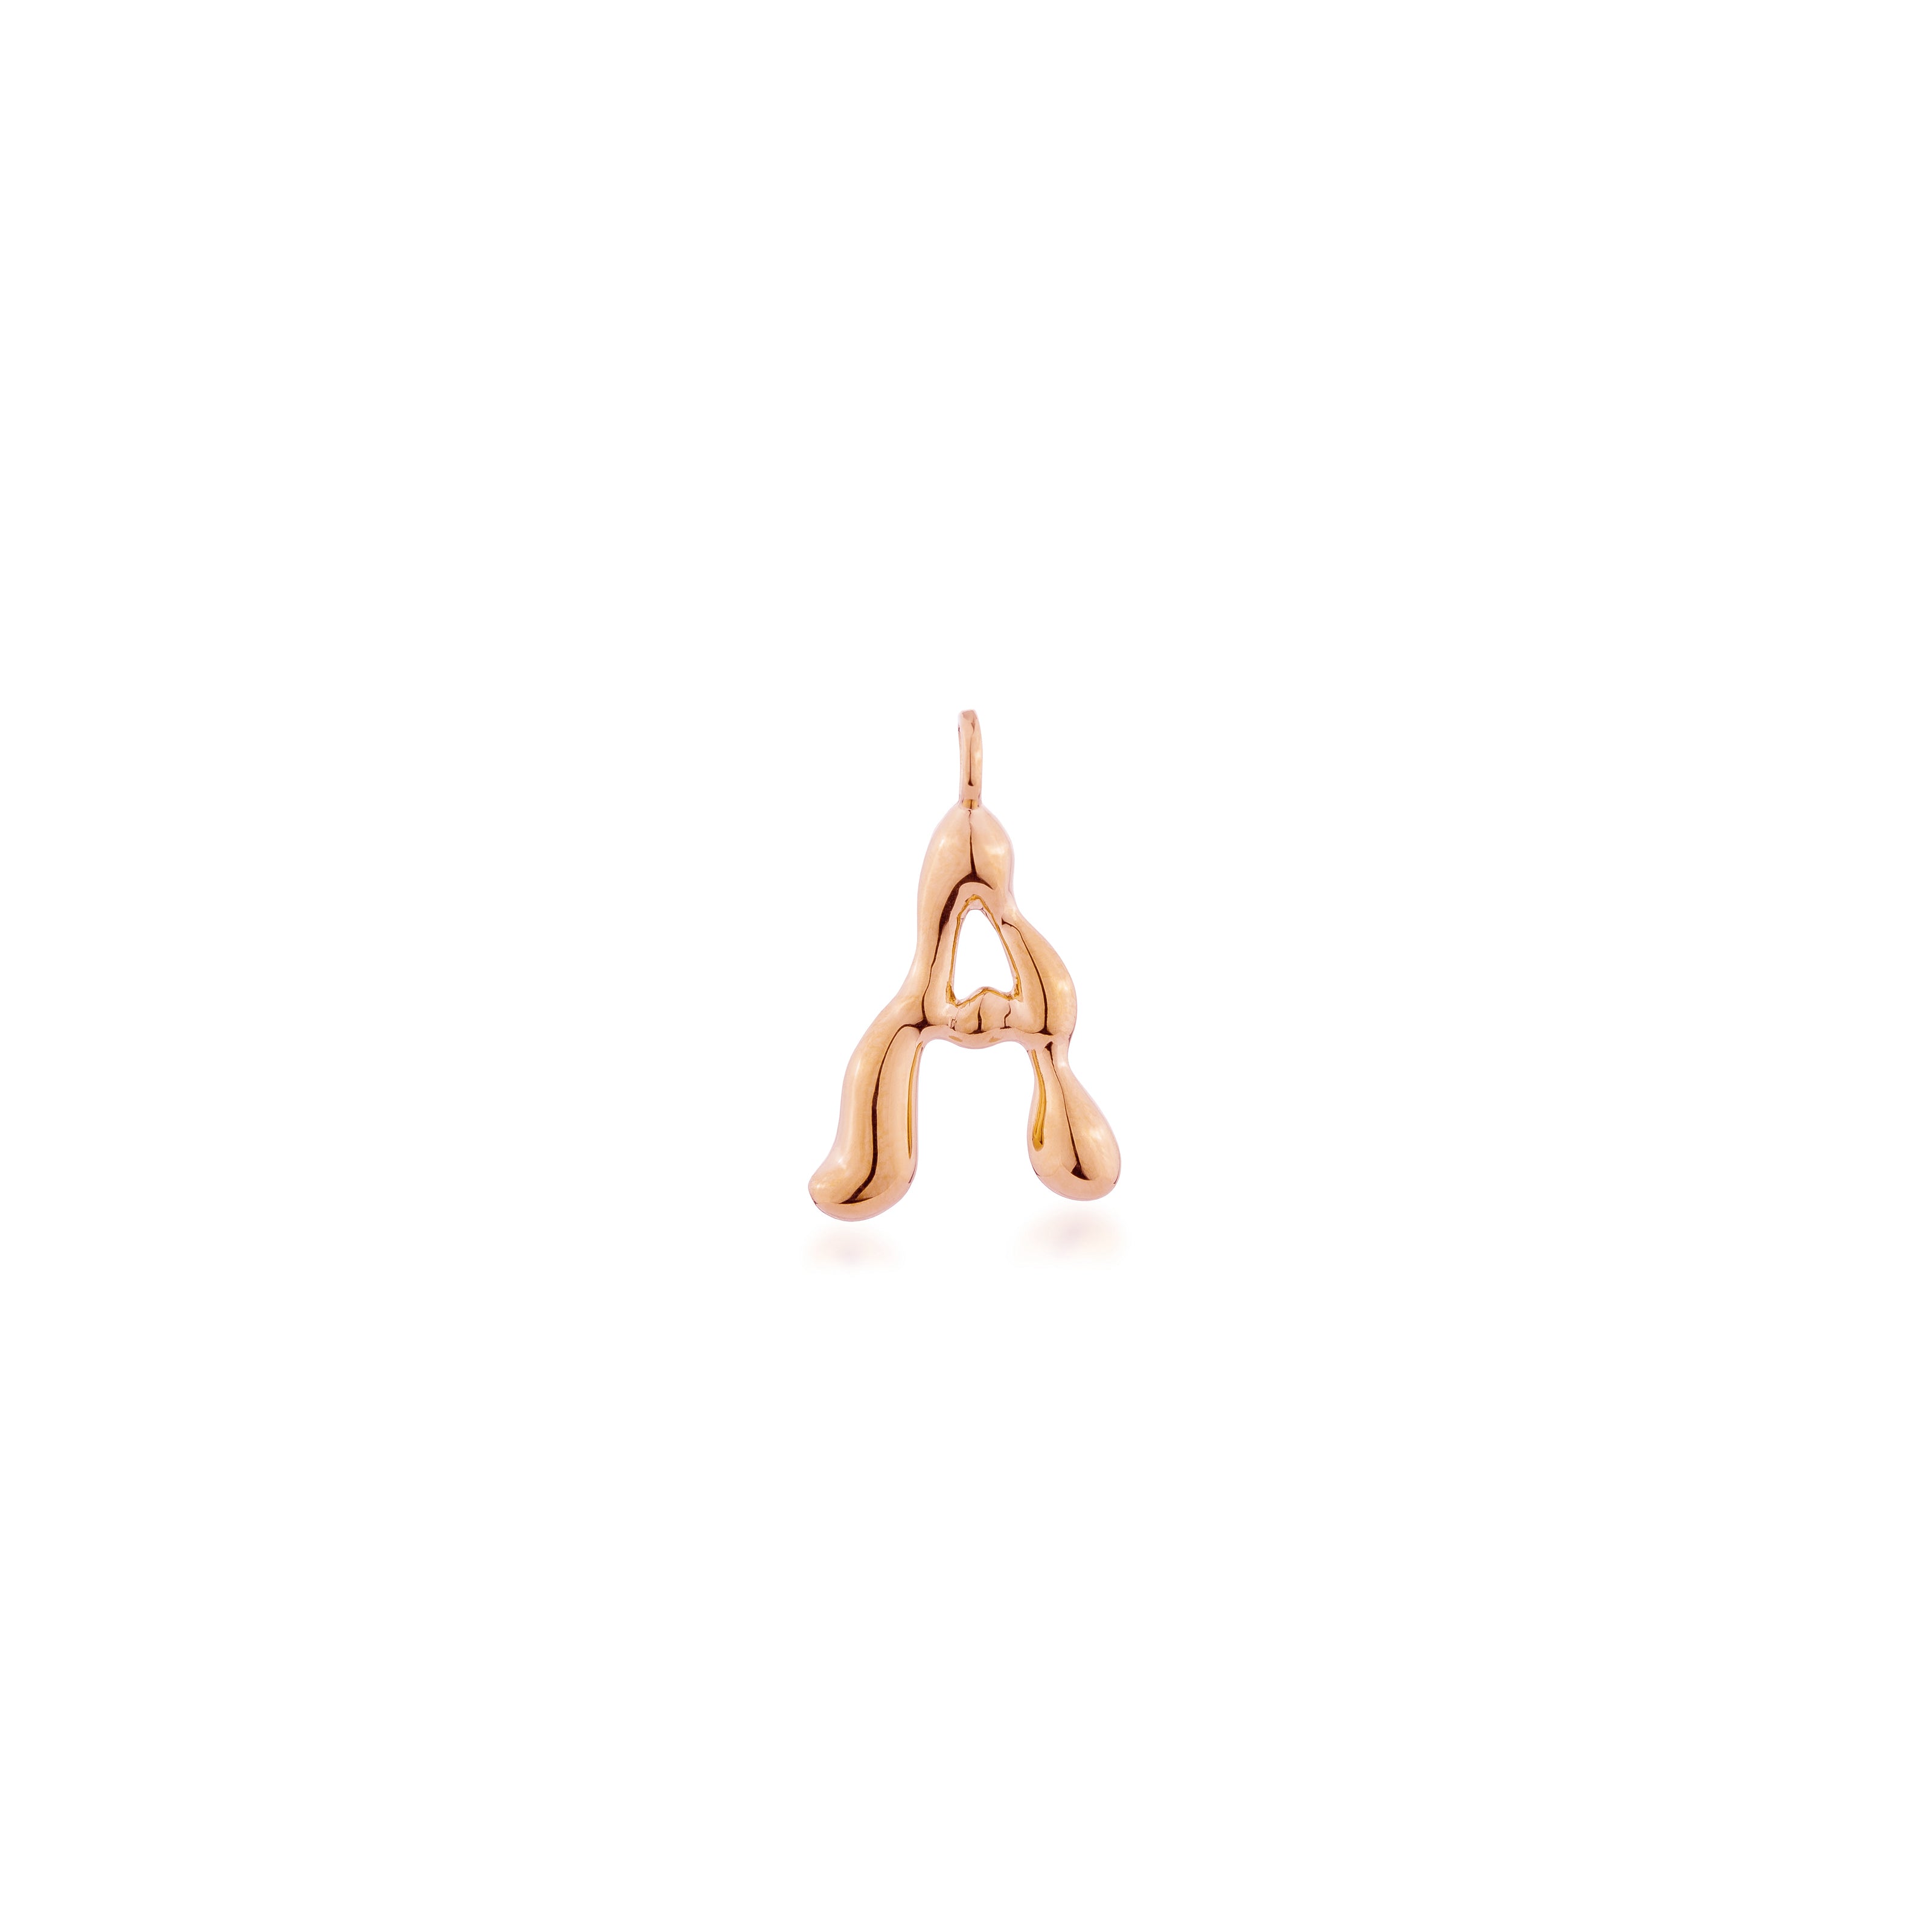 A Alphabet 1 cm.